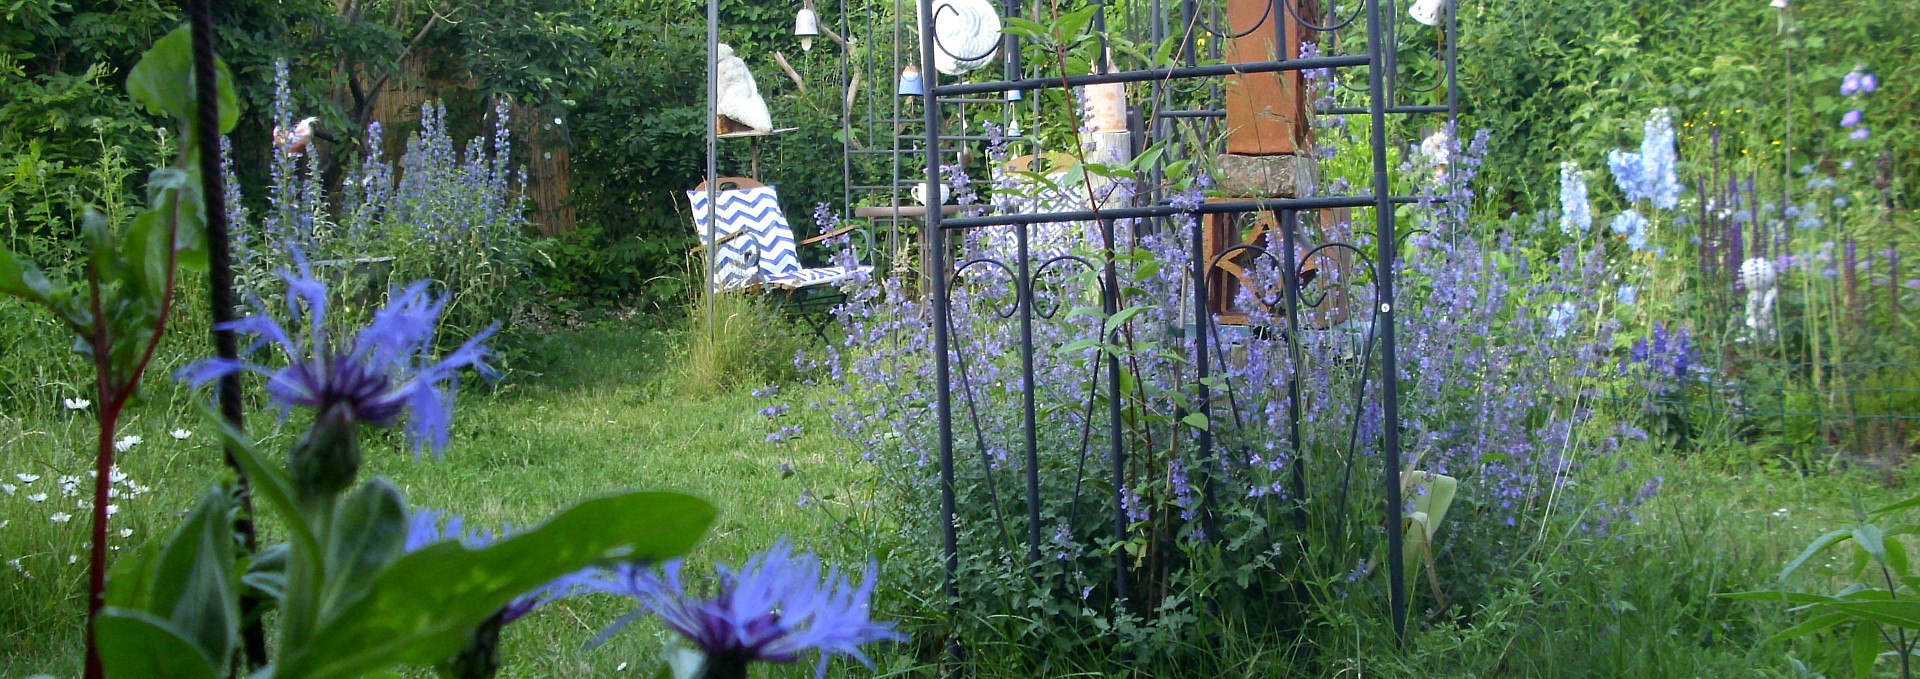 The garden in June 2019, © Anette Schröder